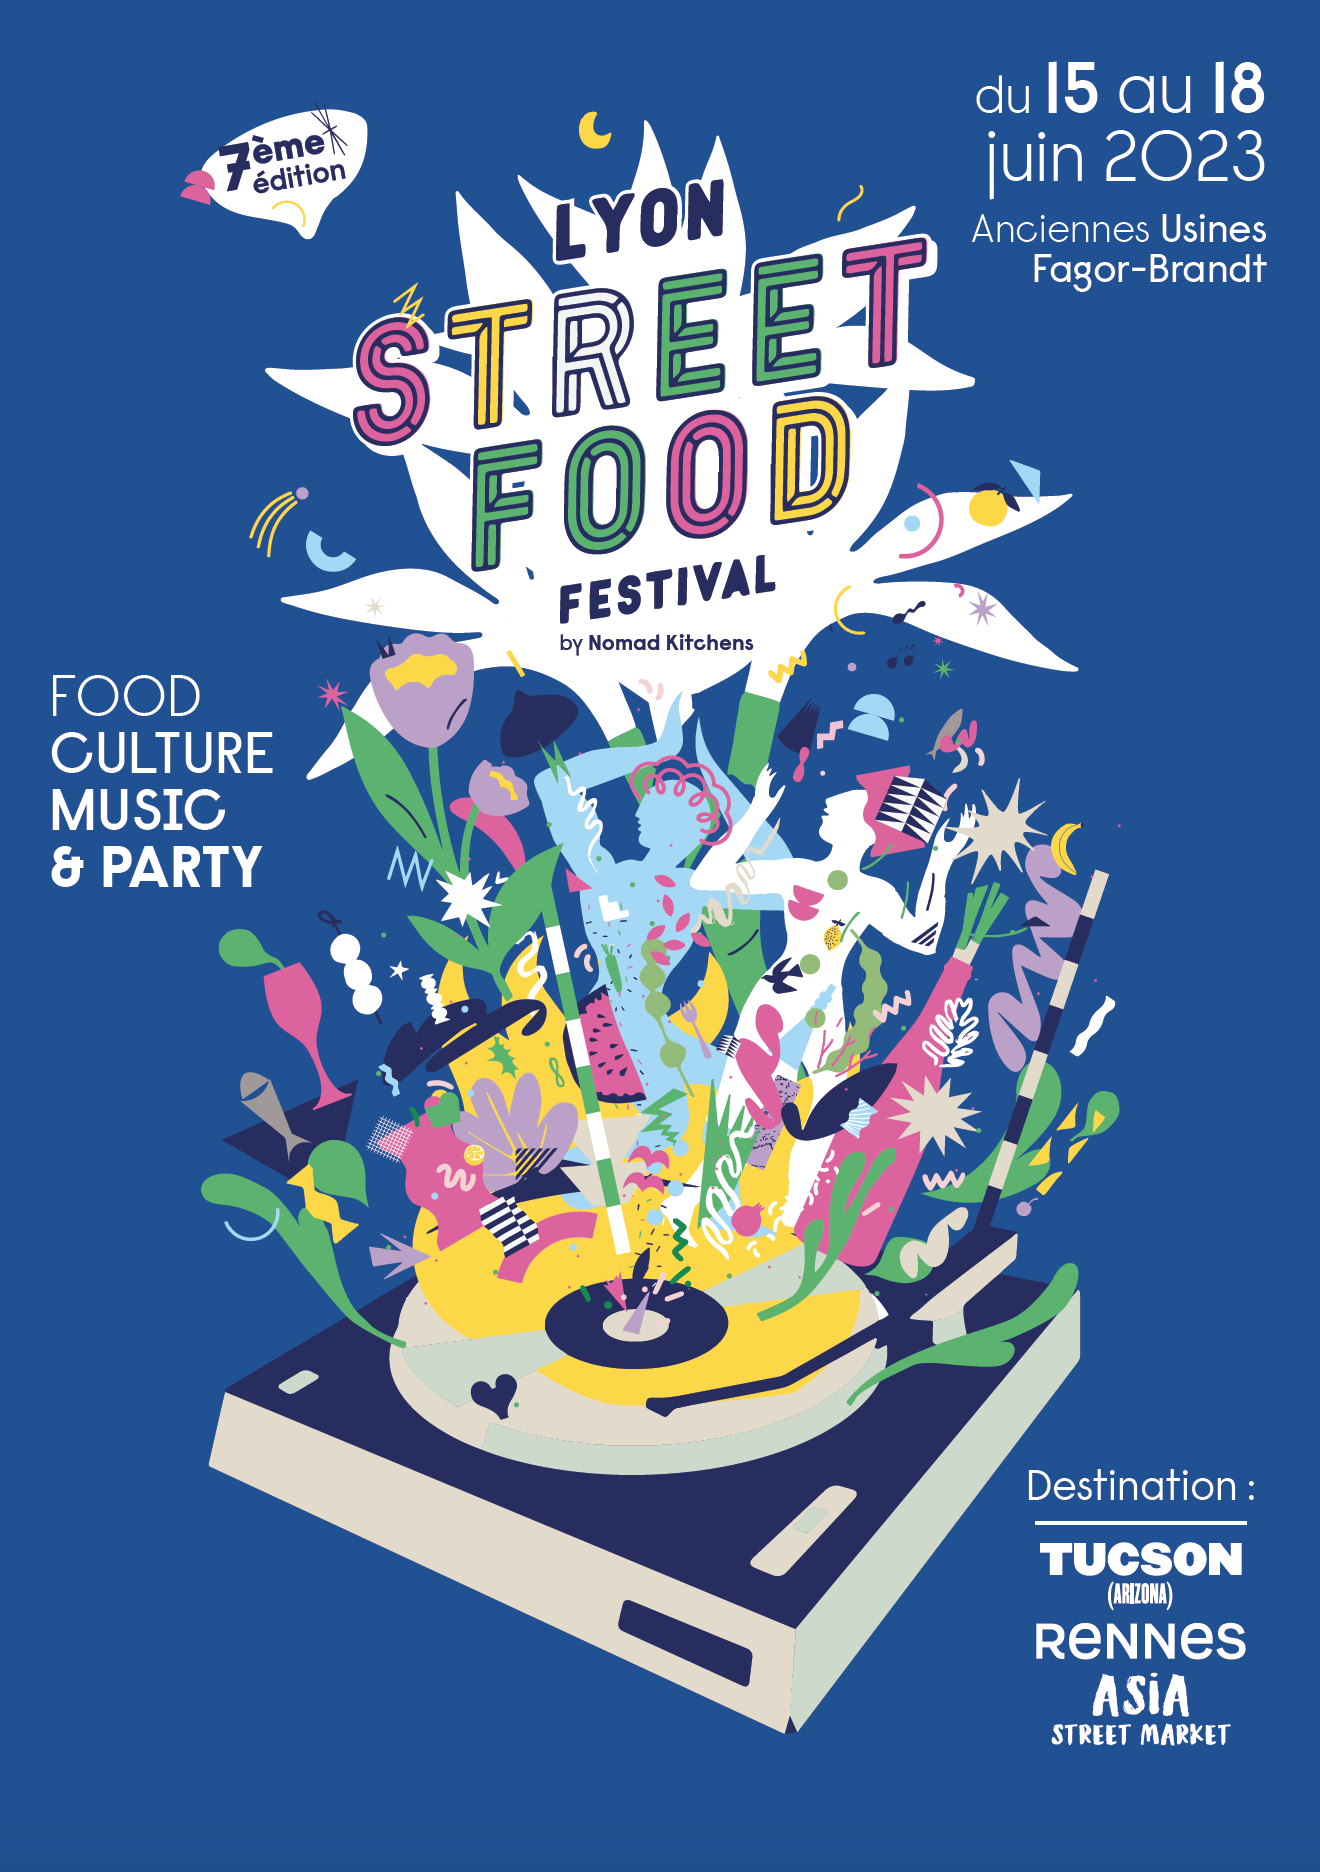 Le Lyon Street Food Festival de retour en juin pour une 7e édition